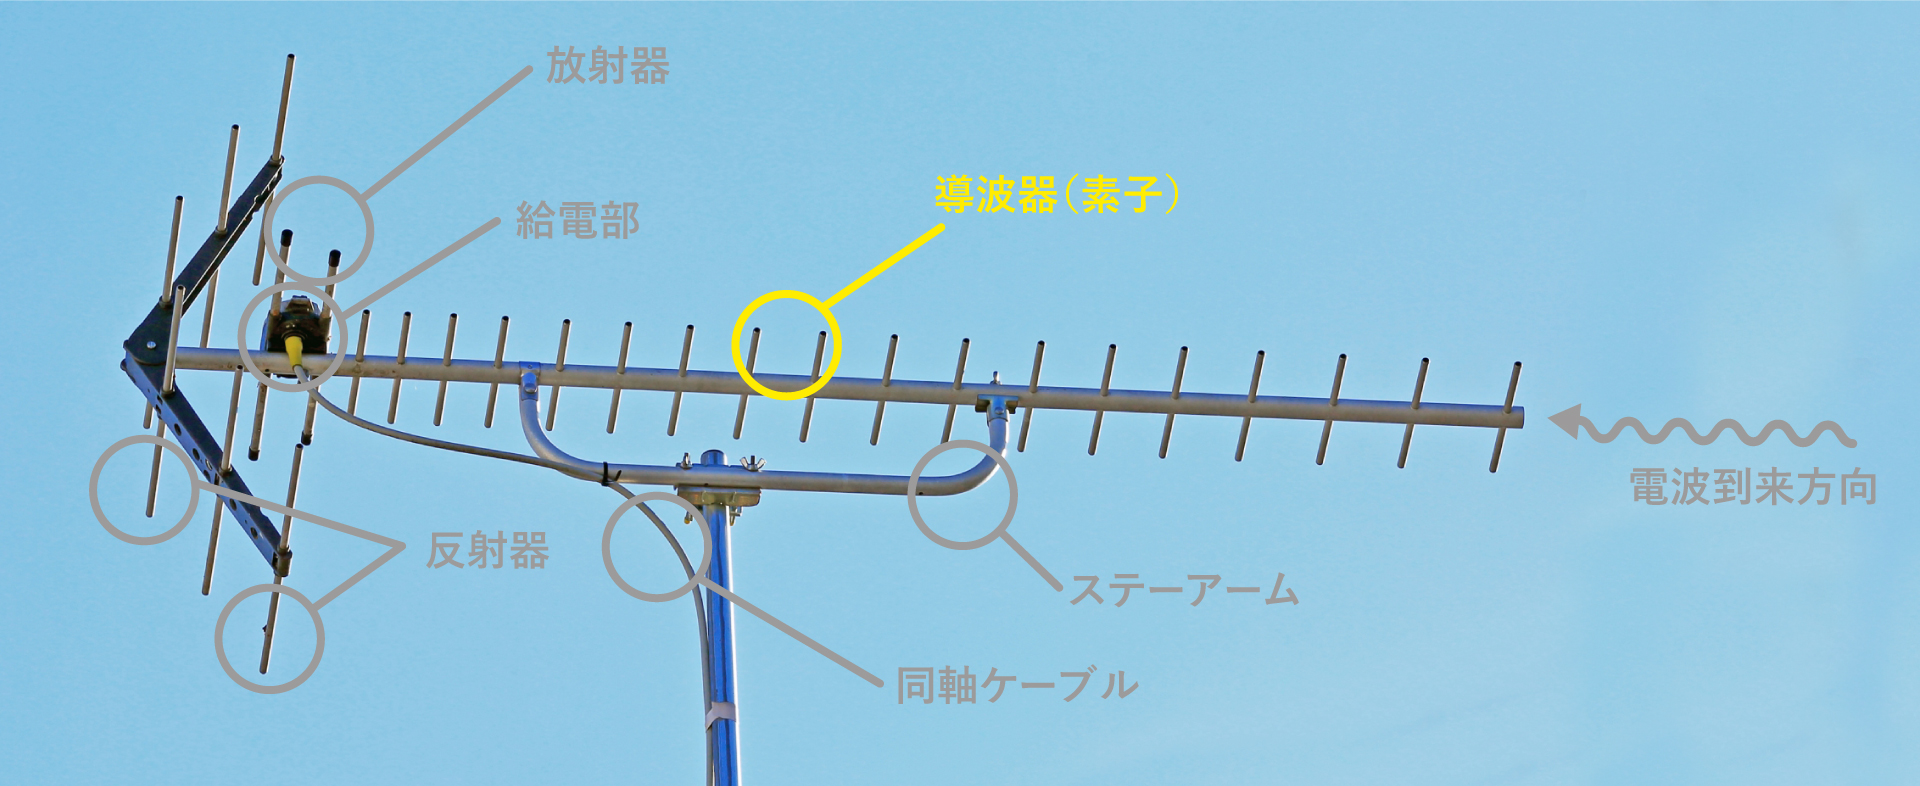 導波器UHFアンテナの各部名称